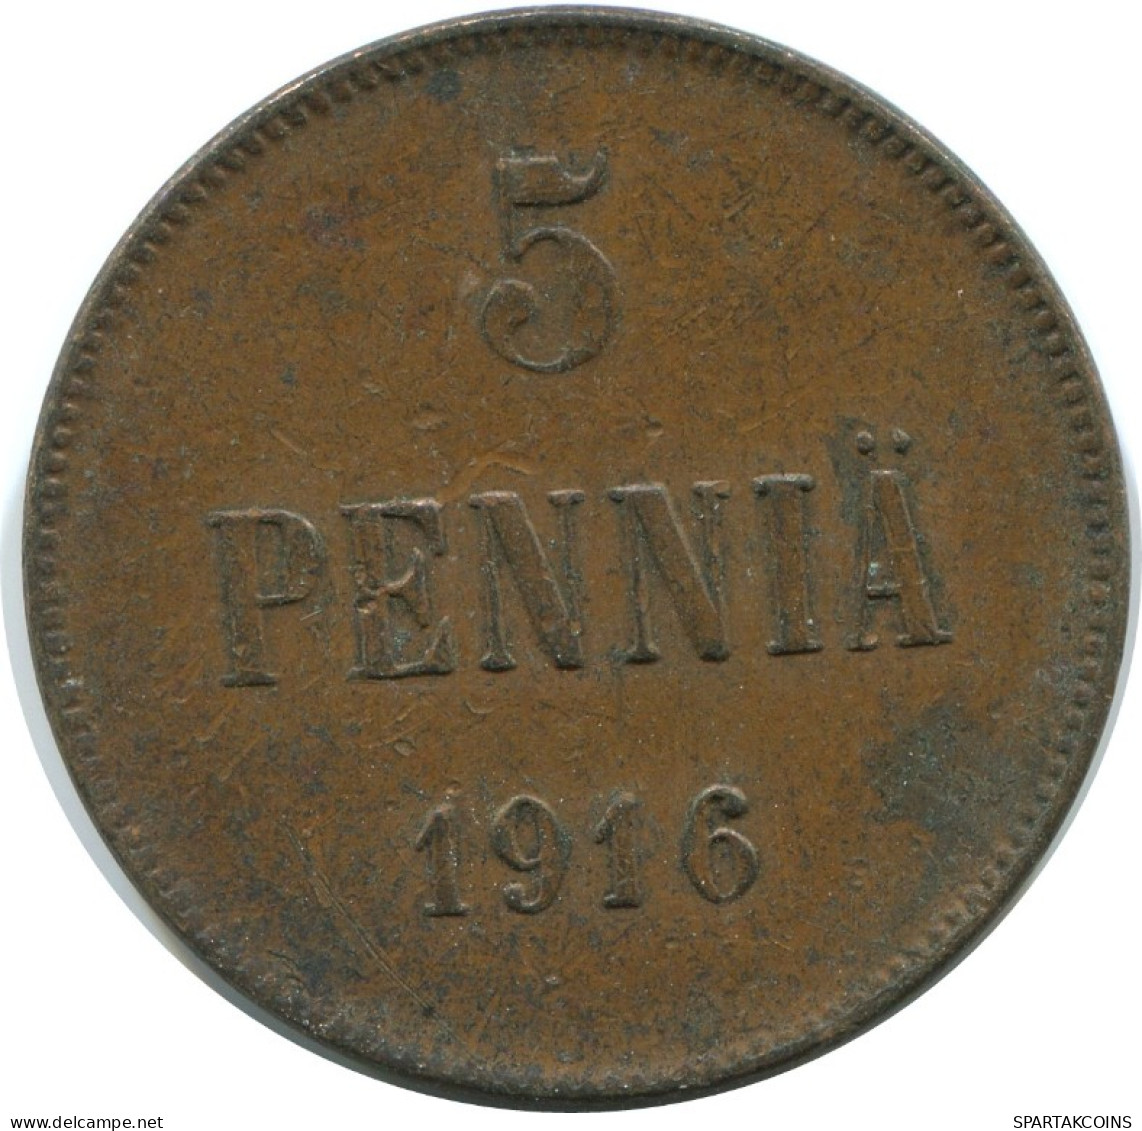 5 PENNIA 1916 FINLANDIA FINLAND Moneda RUSIA RUSSIA EMPIRE #AB188.5.E.A - Finland